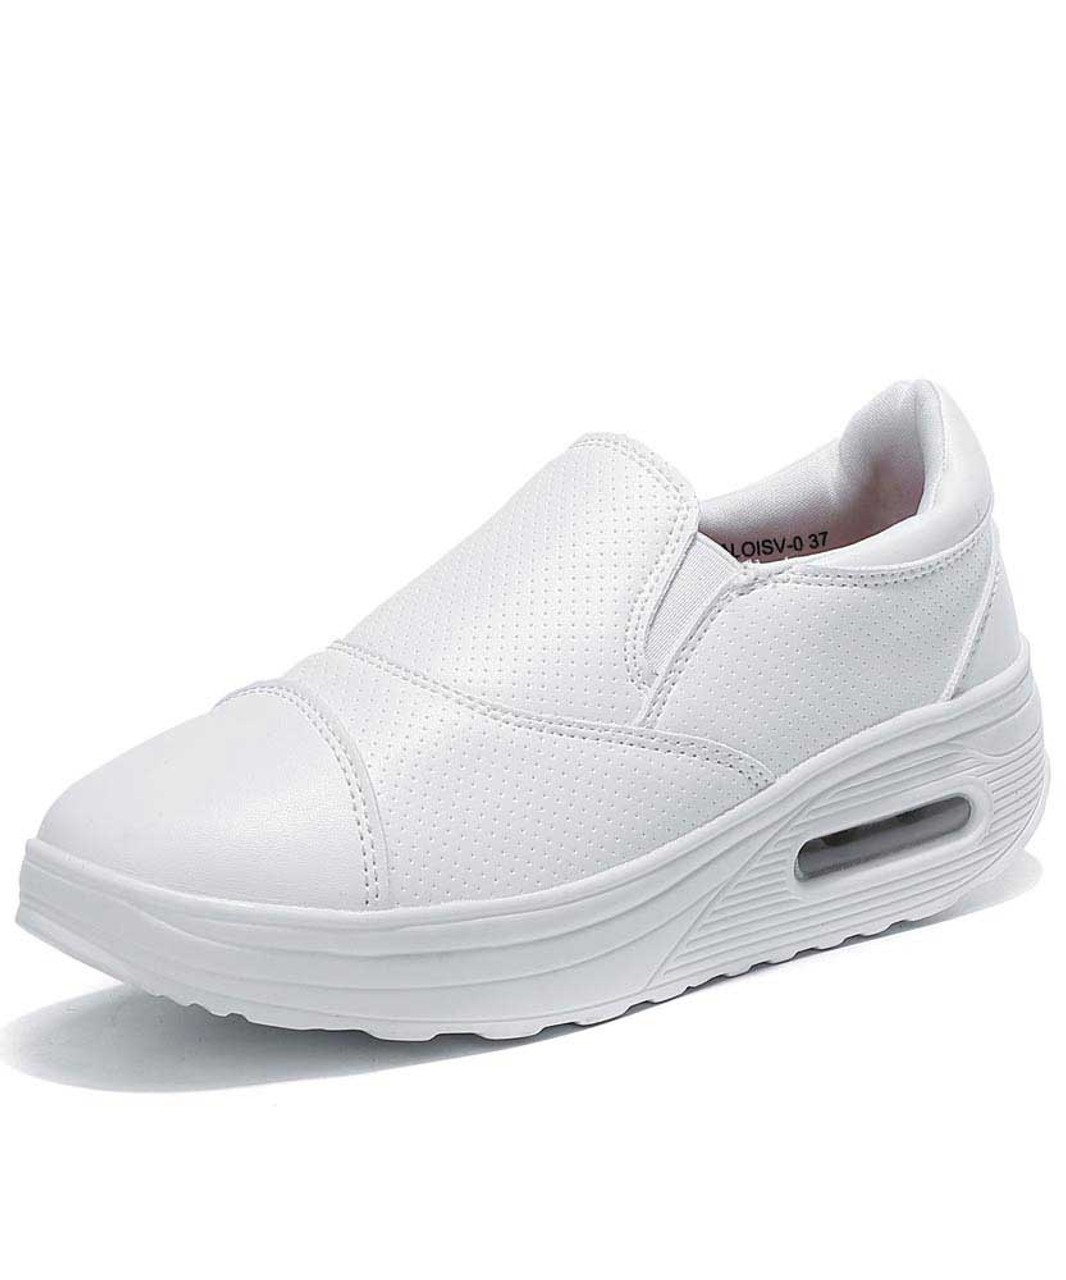 White slip on rocker bottom shoe 